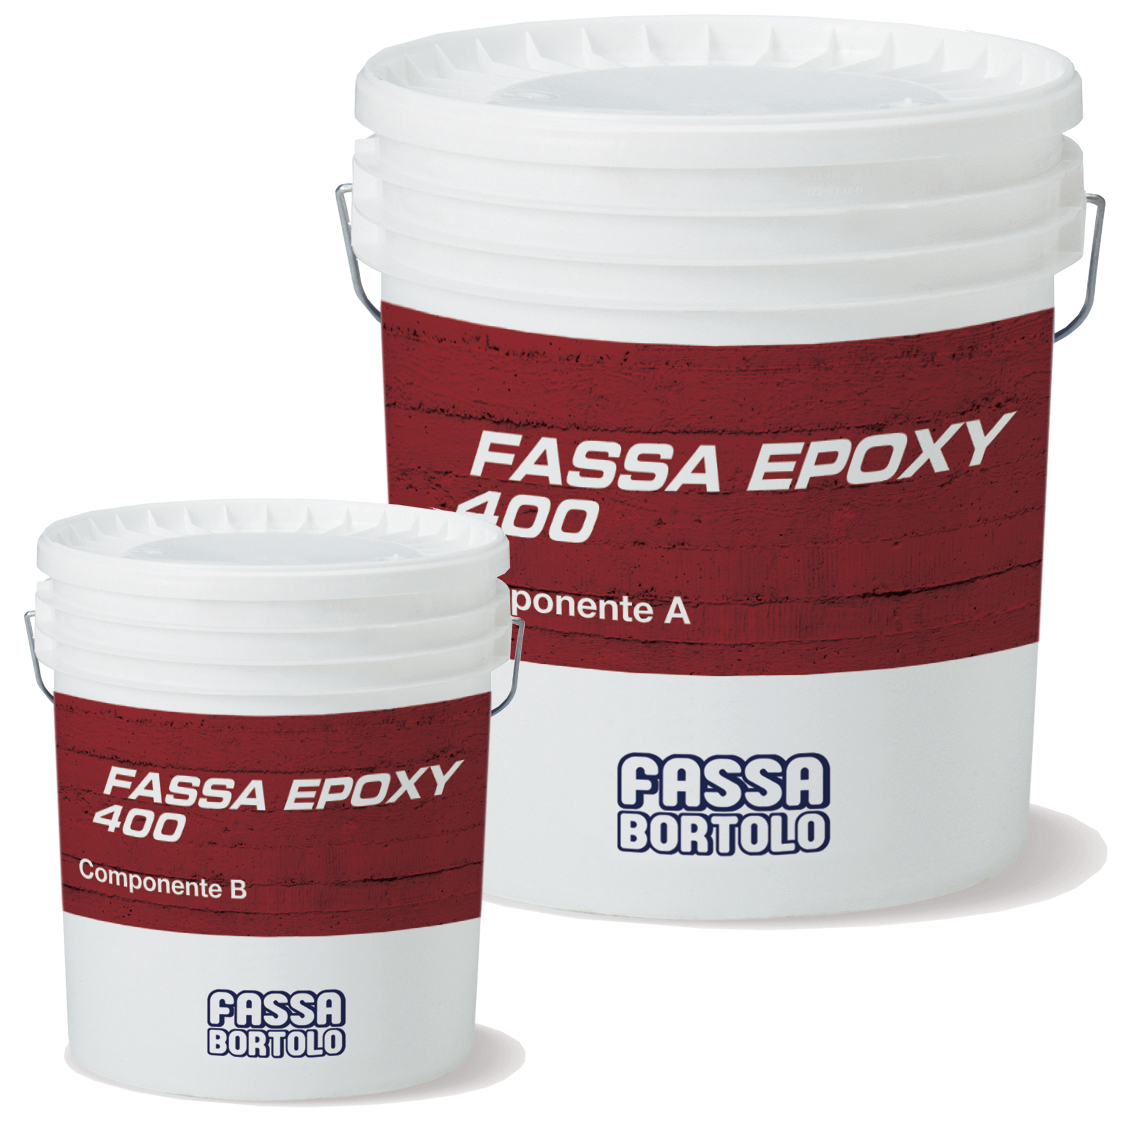 FASSA EPOXY 400